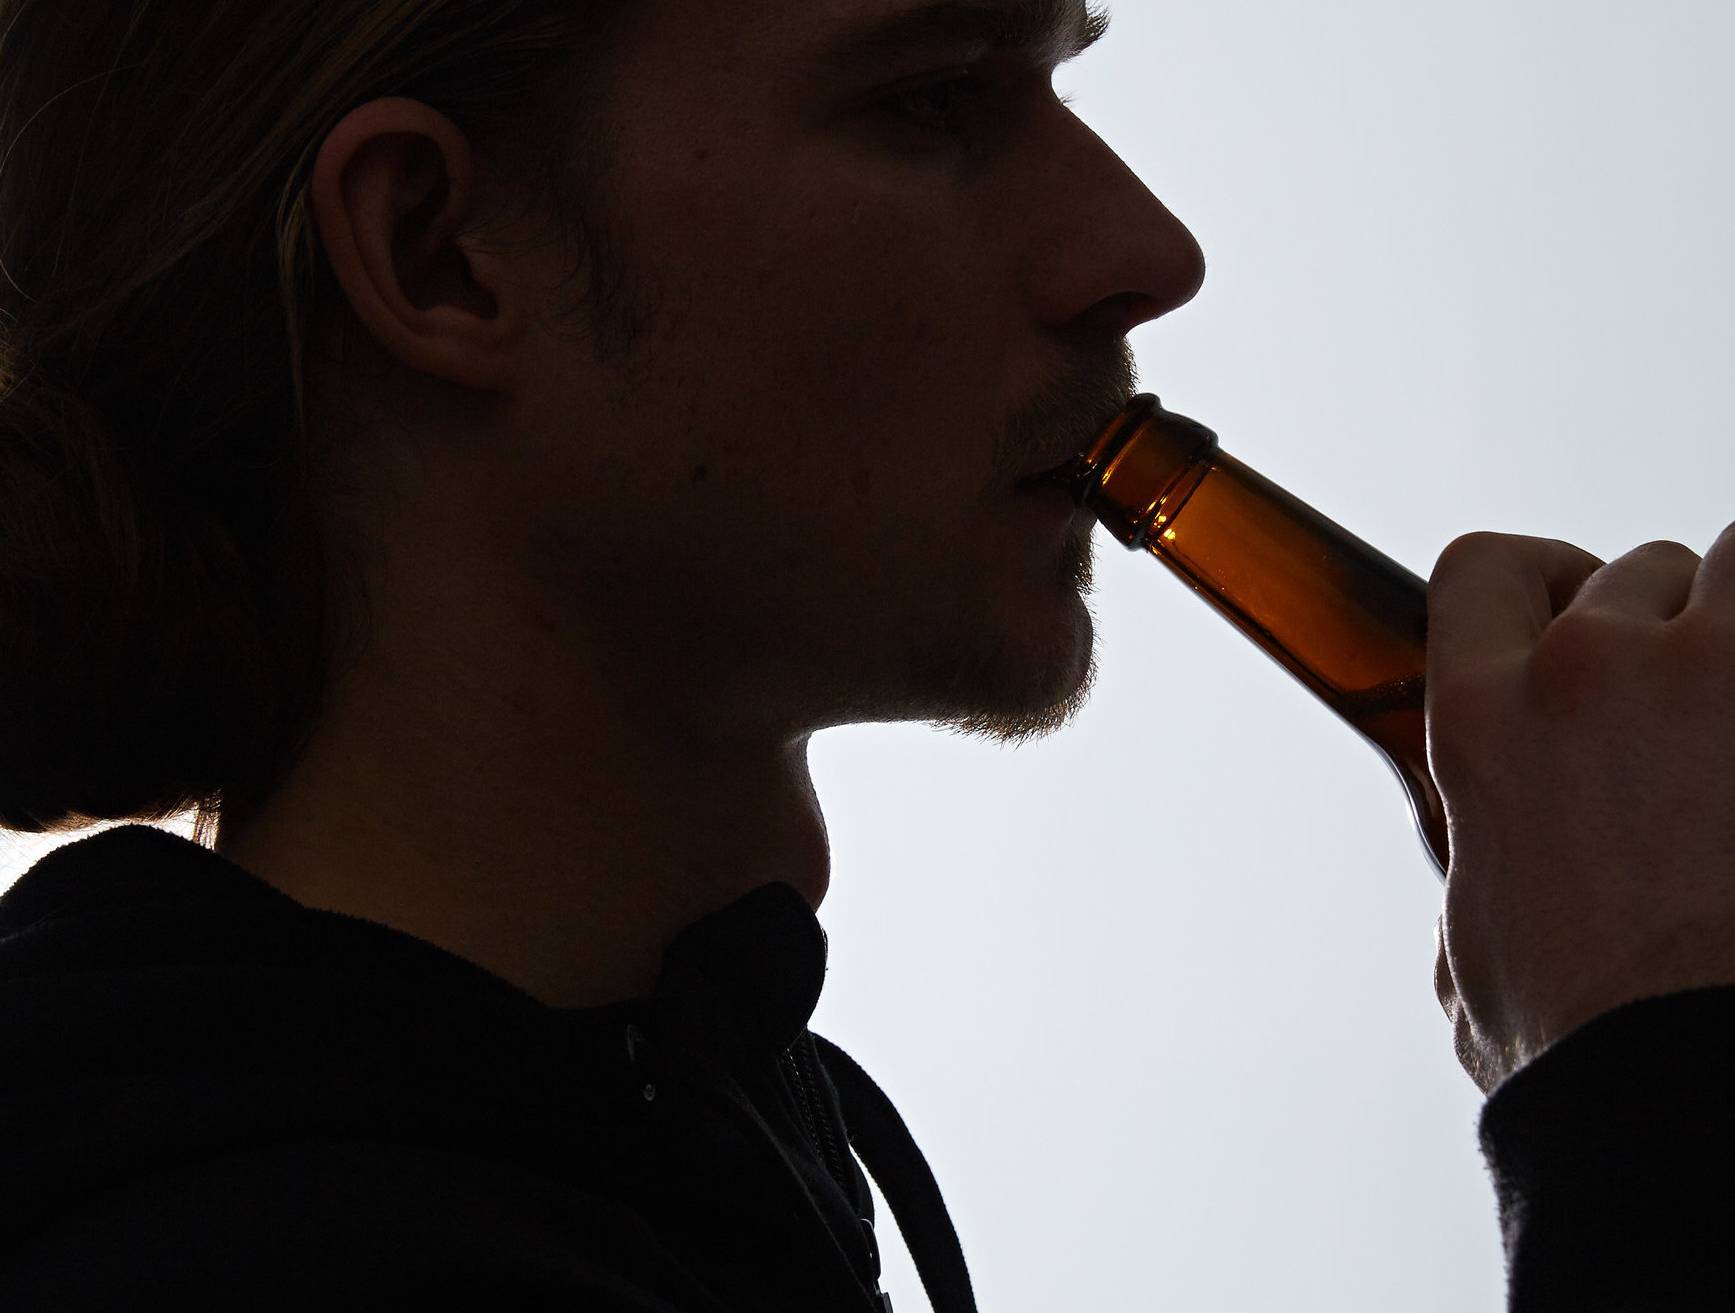  Viele Menschen trinken und rauchen in der Corona-Krise verstärkt - Sucht-Gefahr. Foto: Christian Wyrwa 